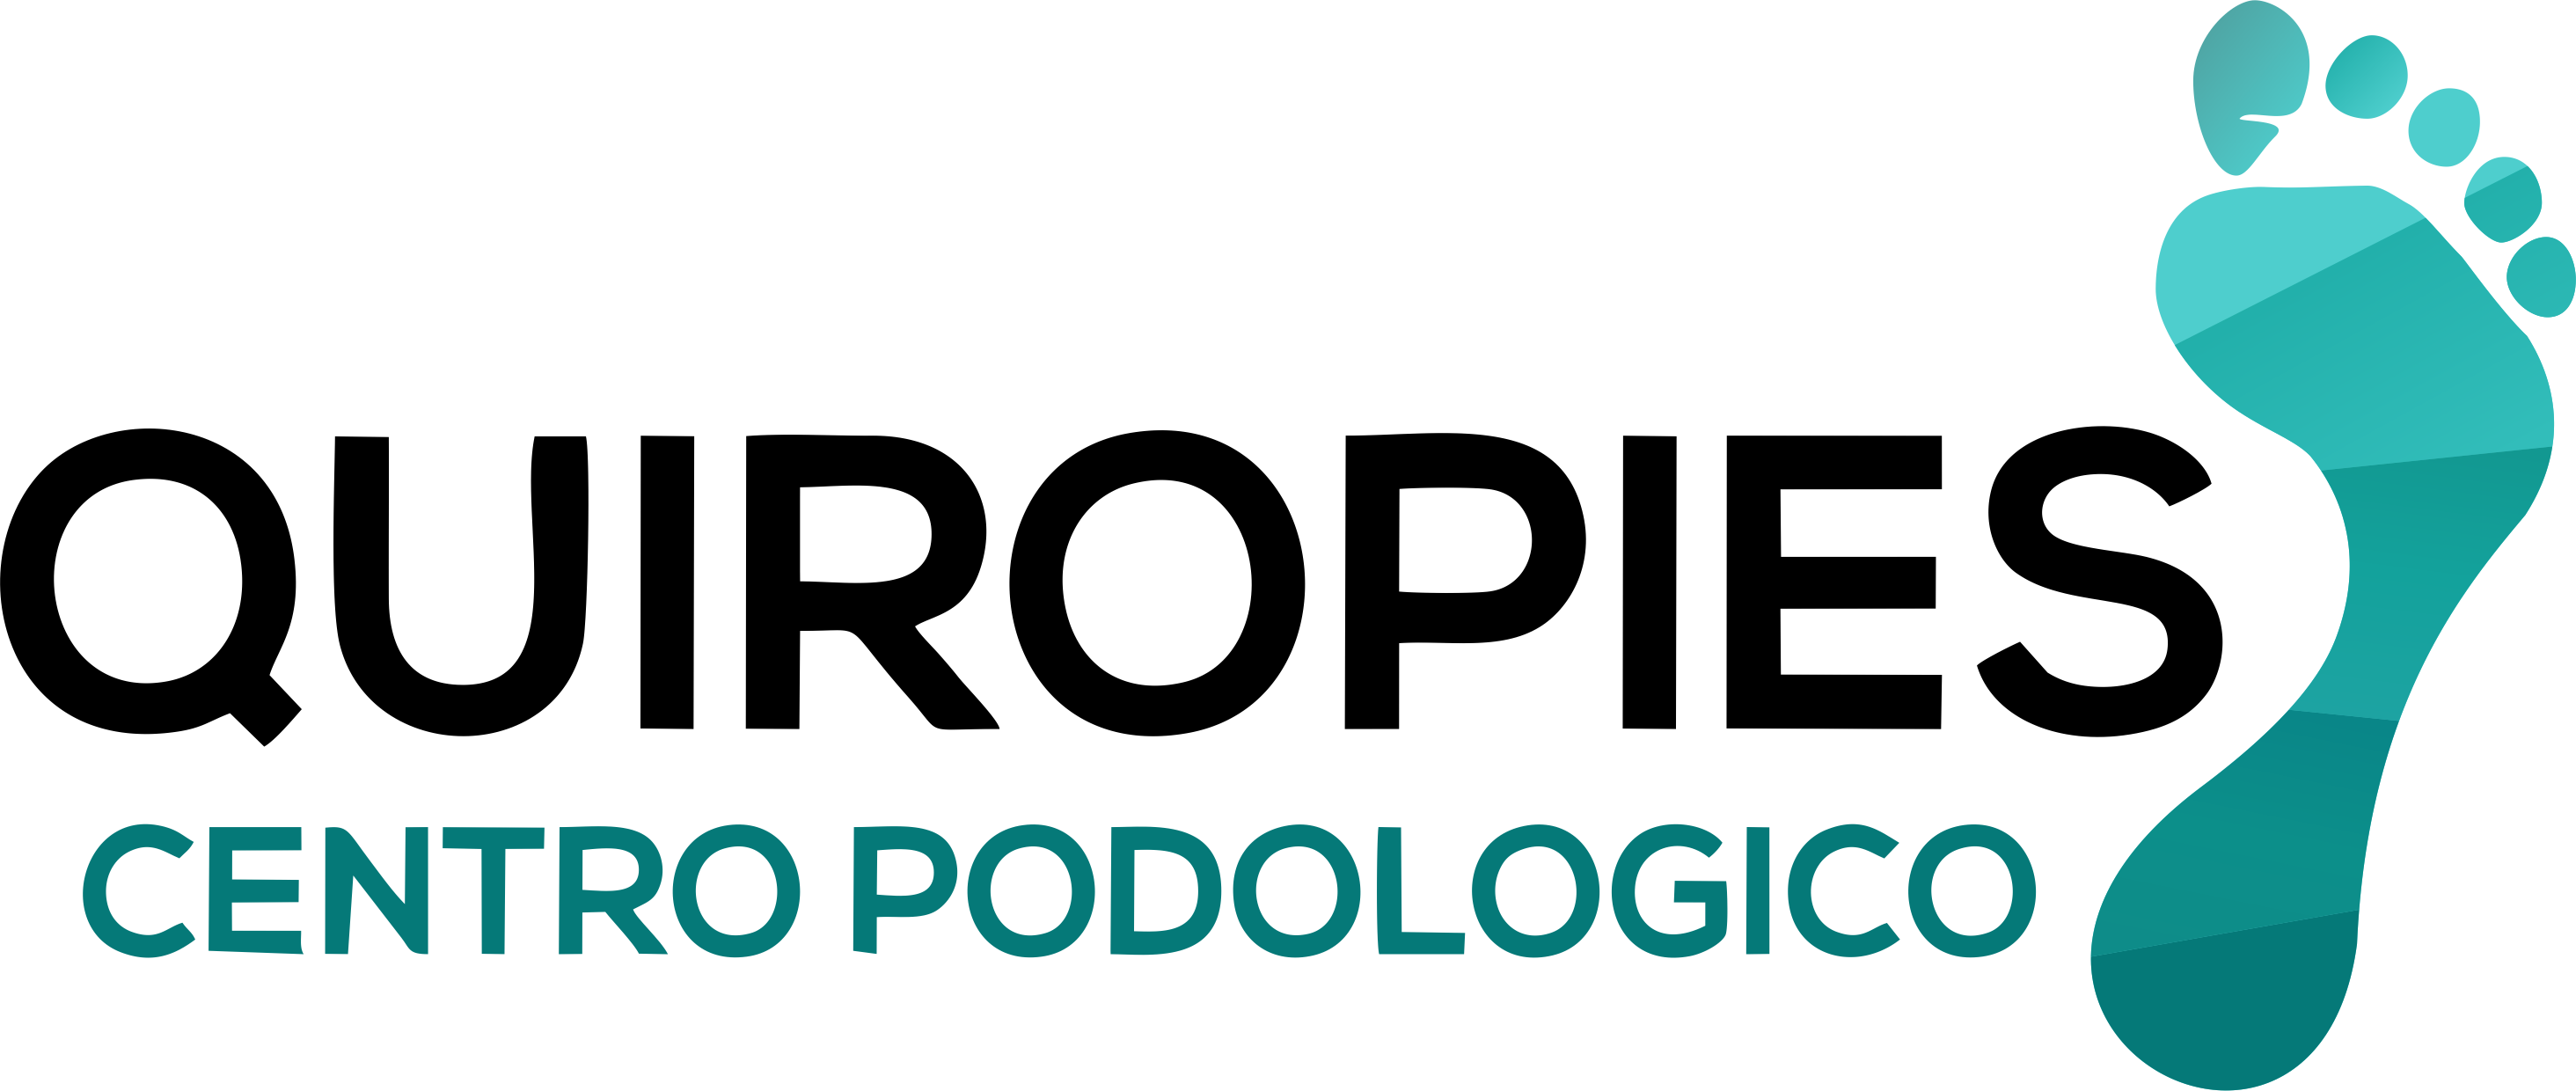 Centro Podológico Quiropies - Podología